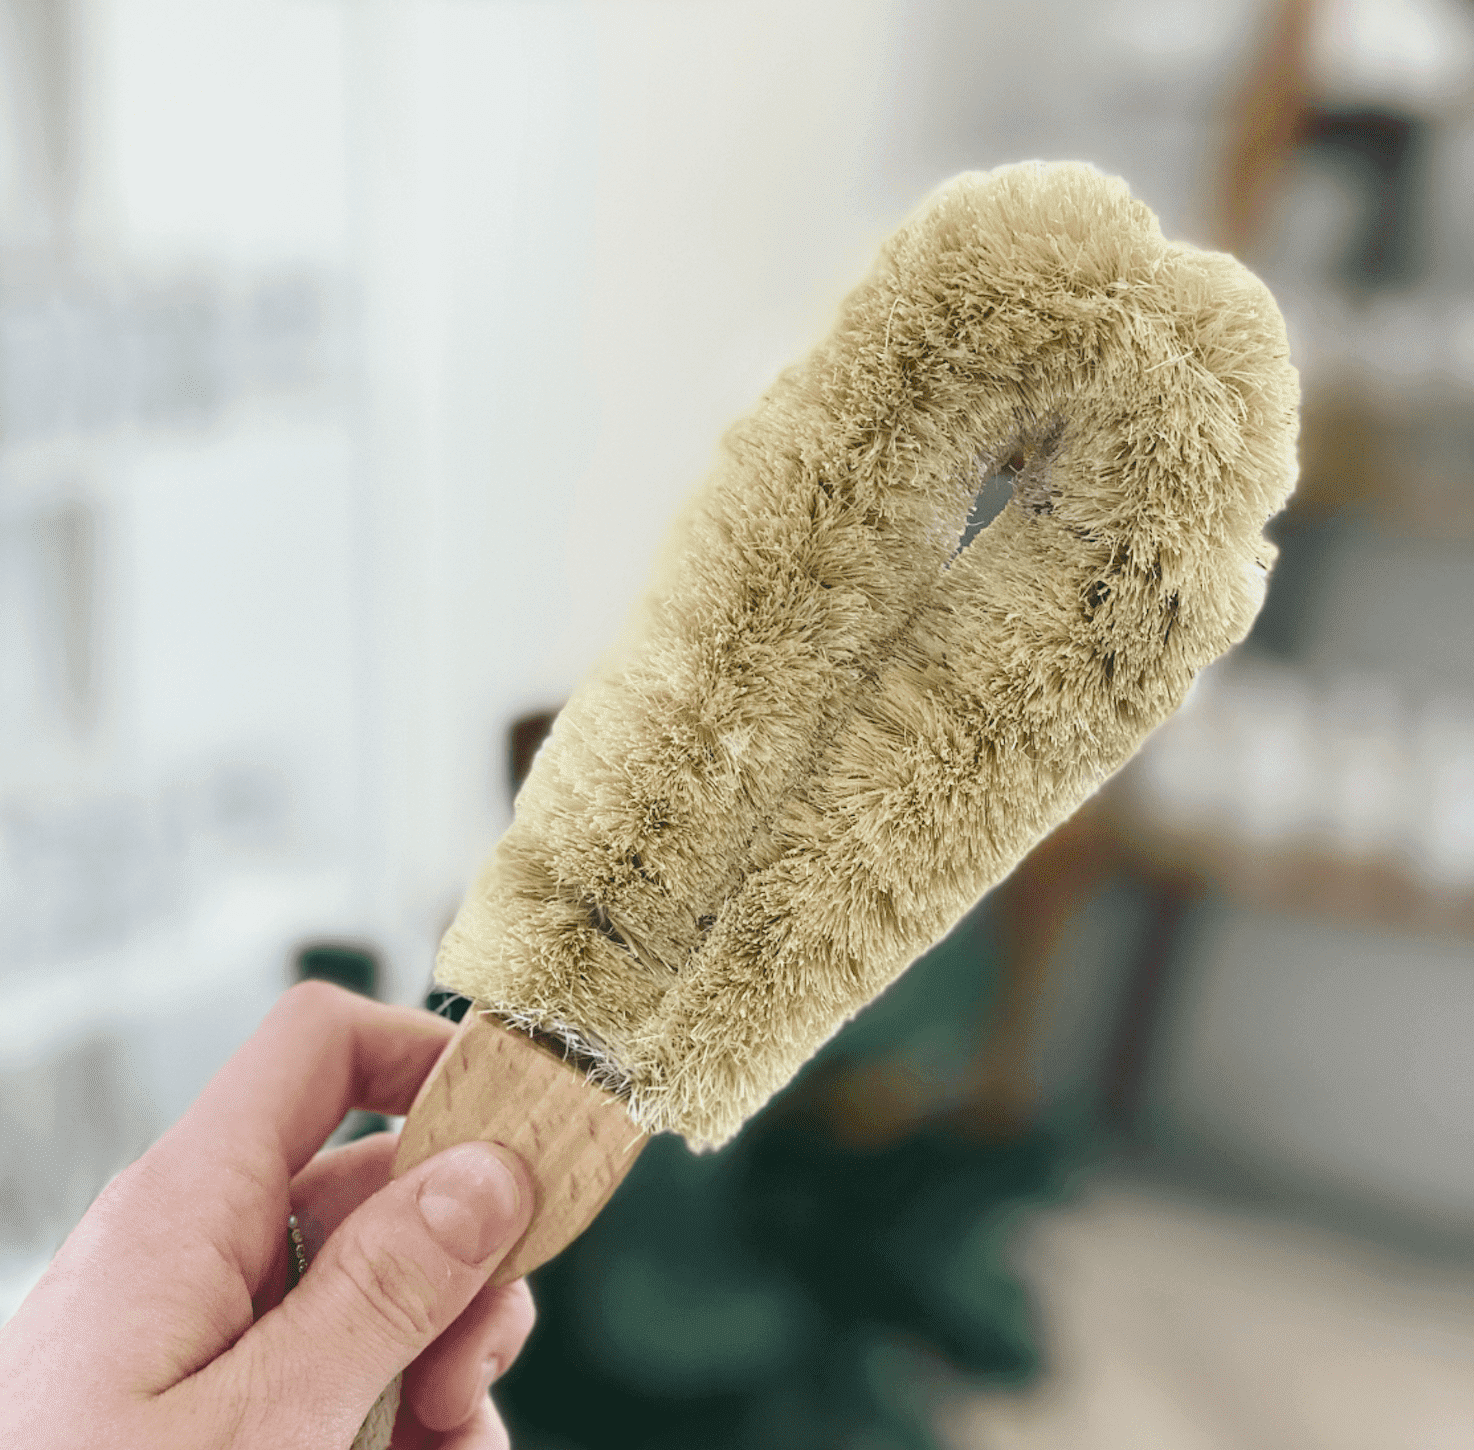 Versatile Cleaning Brush